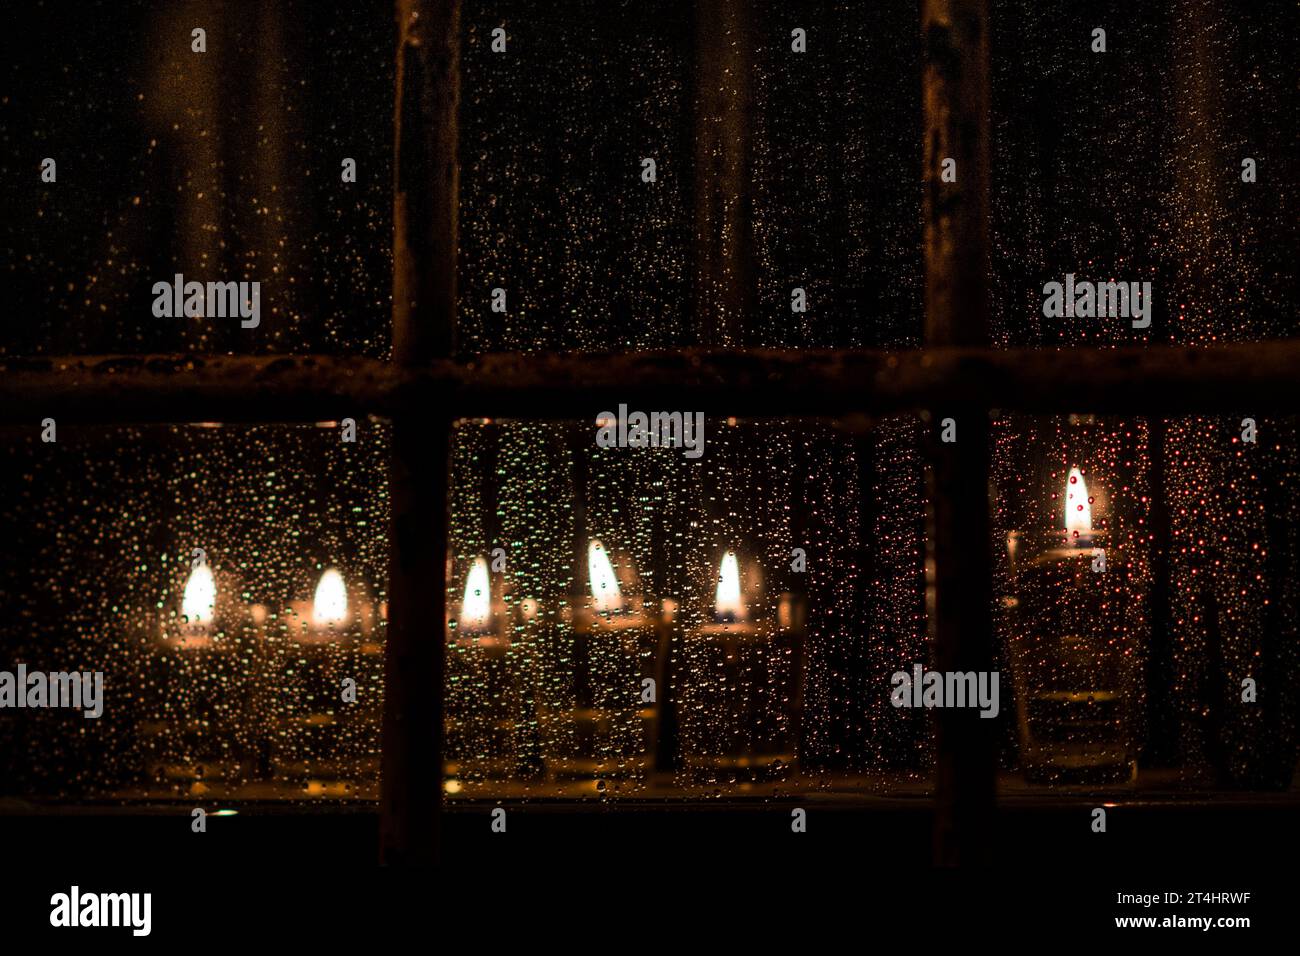 Fiale di olio e stoppini brucianti in una menorah brillano brillantemente in una finestra in una notte di pioggia a Gerusalemme durante il festival ebraico di Hanukkah. Foto Stock